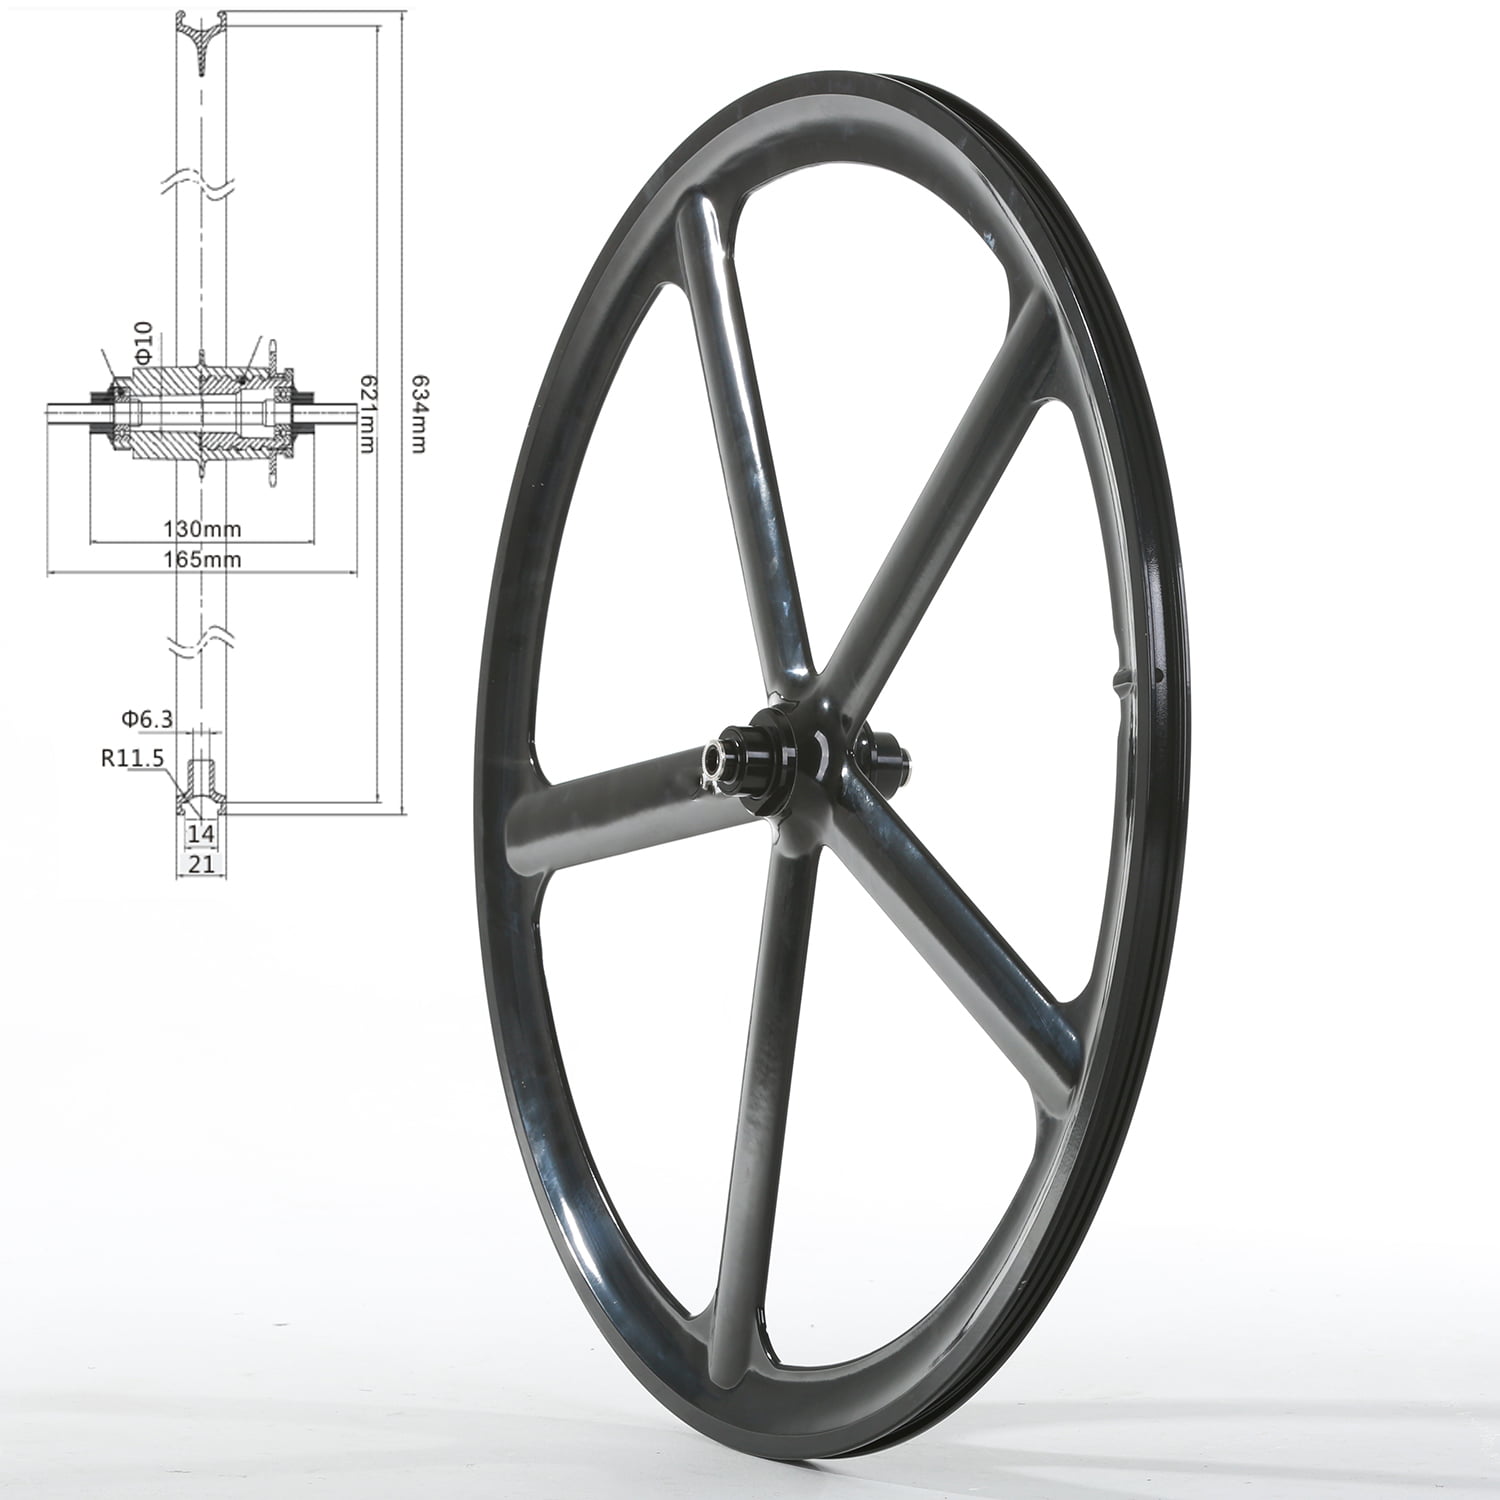 Details about   Fixed Gear 700c Bicycle Wheel 3-Spoke Wheels Black Rim Rear Fixie Single Speed 